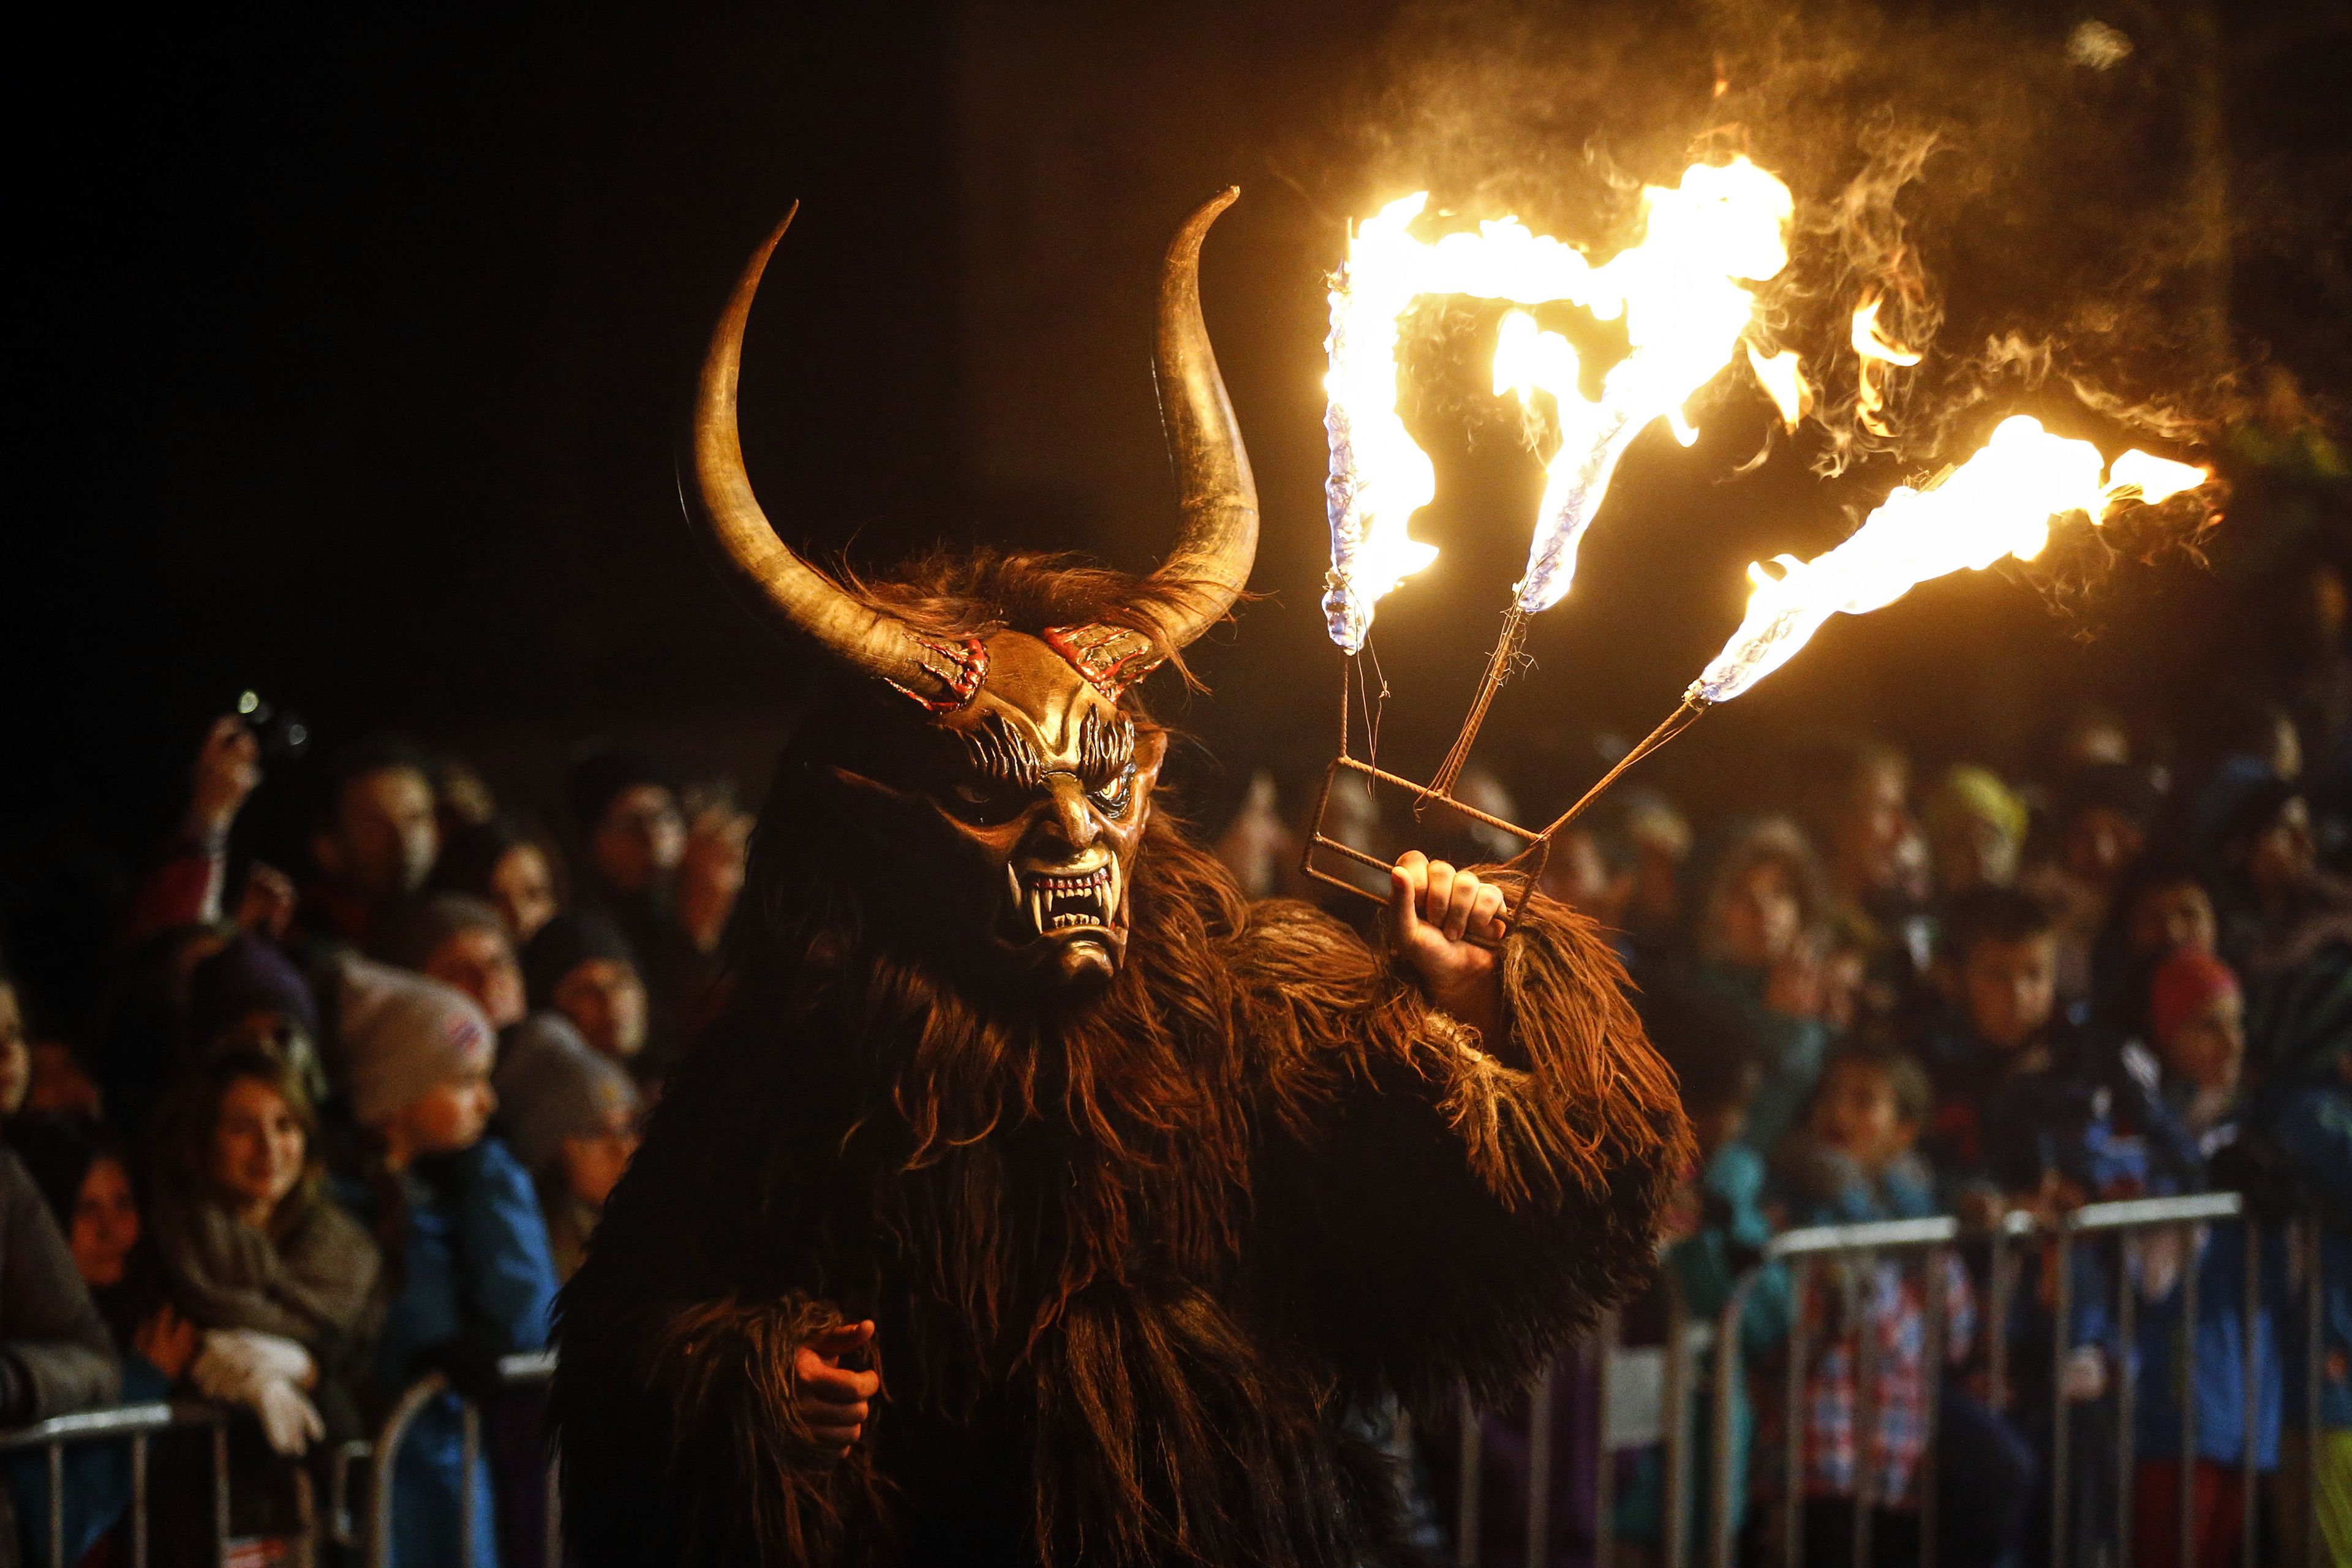 Un hombre disfrazado durante el festival de Perchten (Krampus) en el pueblo de Huben, al oeste de Austria.